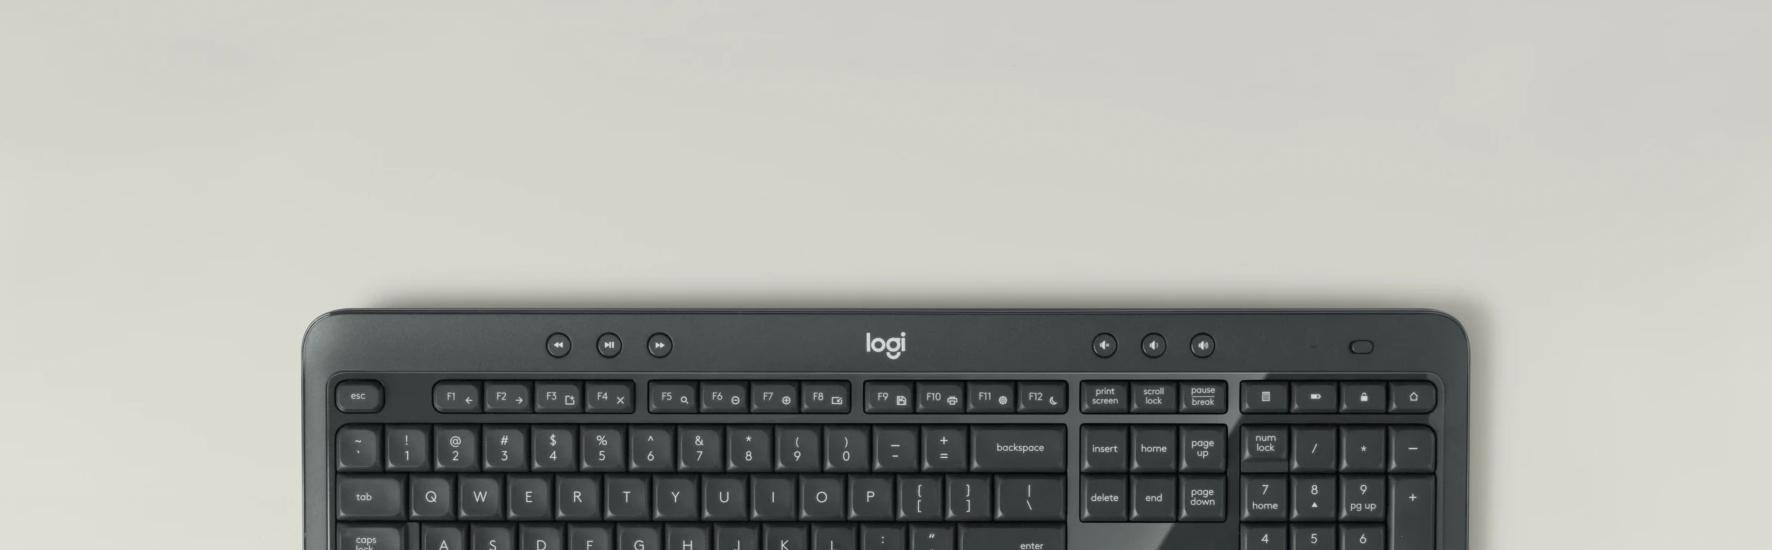 Logitech MK540 Advanced - zawsze komfortowe pisanie, dzięki intuicyjnemu rozmieszczeniu klawiszy klawiatury